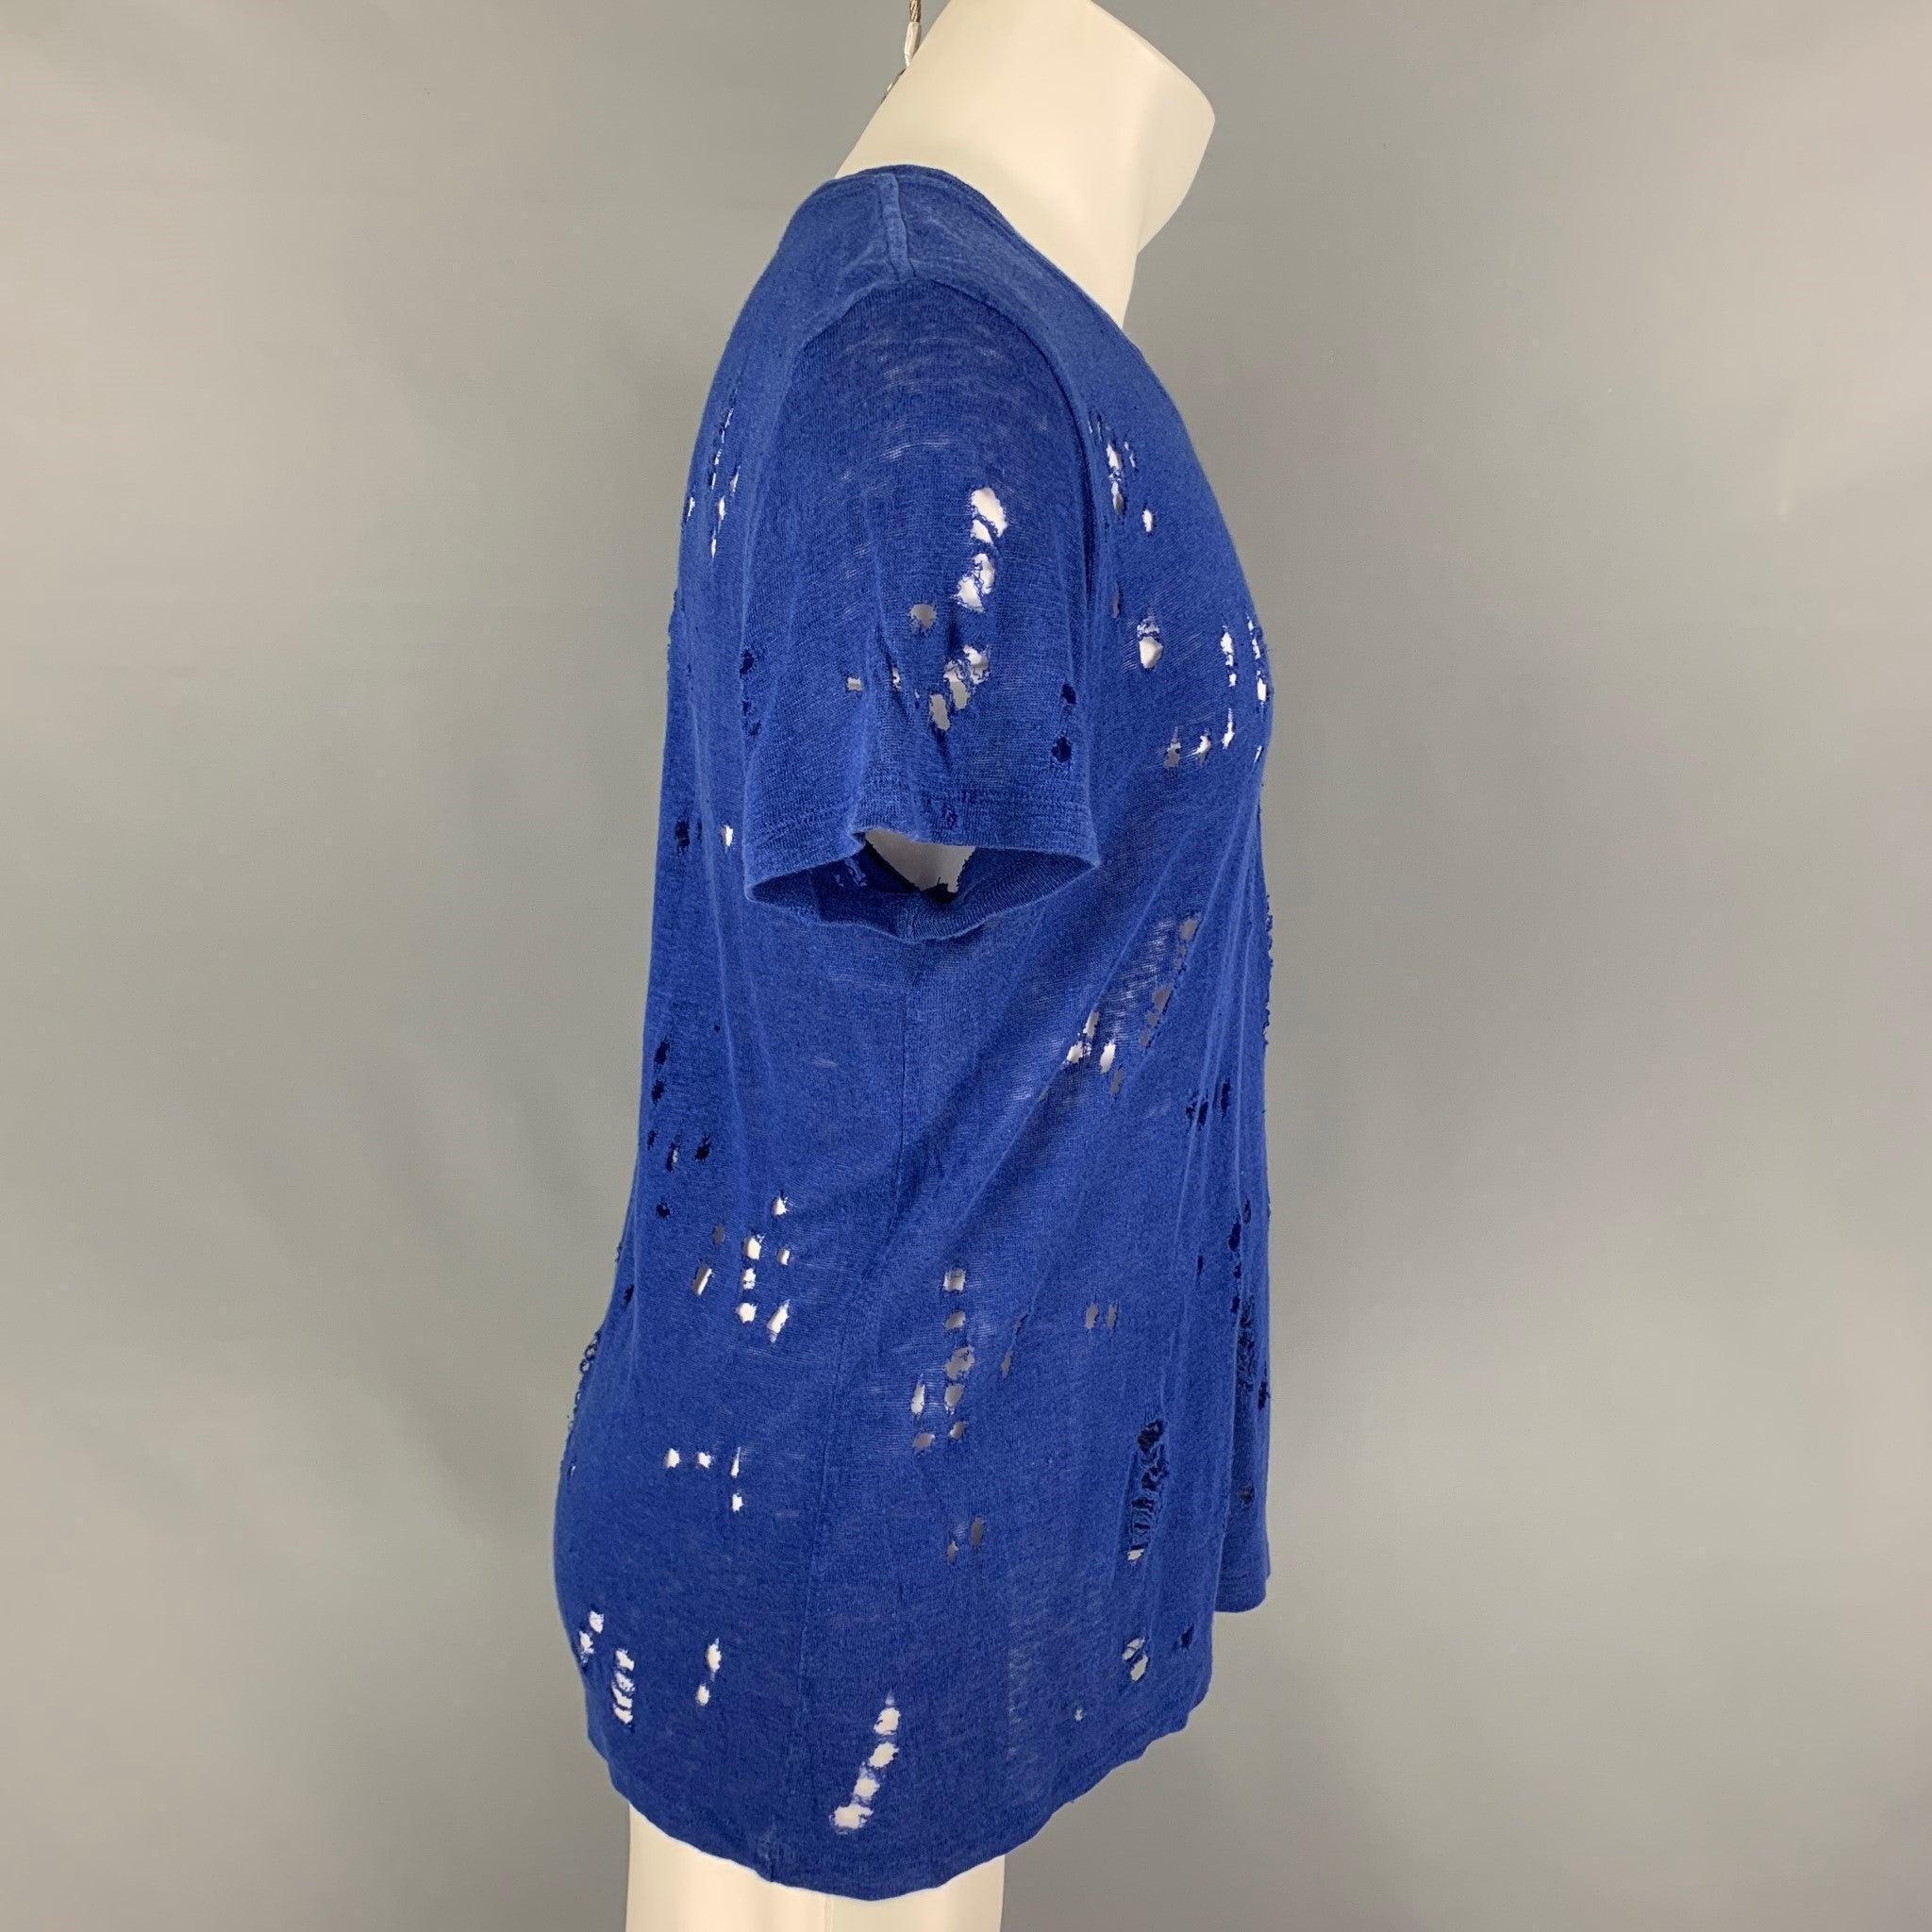 Le t-shirt 'Clay' d'Iro se présente dans un lin bleu royal avec des détails en relief et une encolure ras du cou. Fabriqué au Portugal.
Très bon état d'origine.  

Marqué :   XS 

Mesures : 
 
Epaule : 17 pouces  Poitrine : 36 pouces  Manches : 7.5